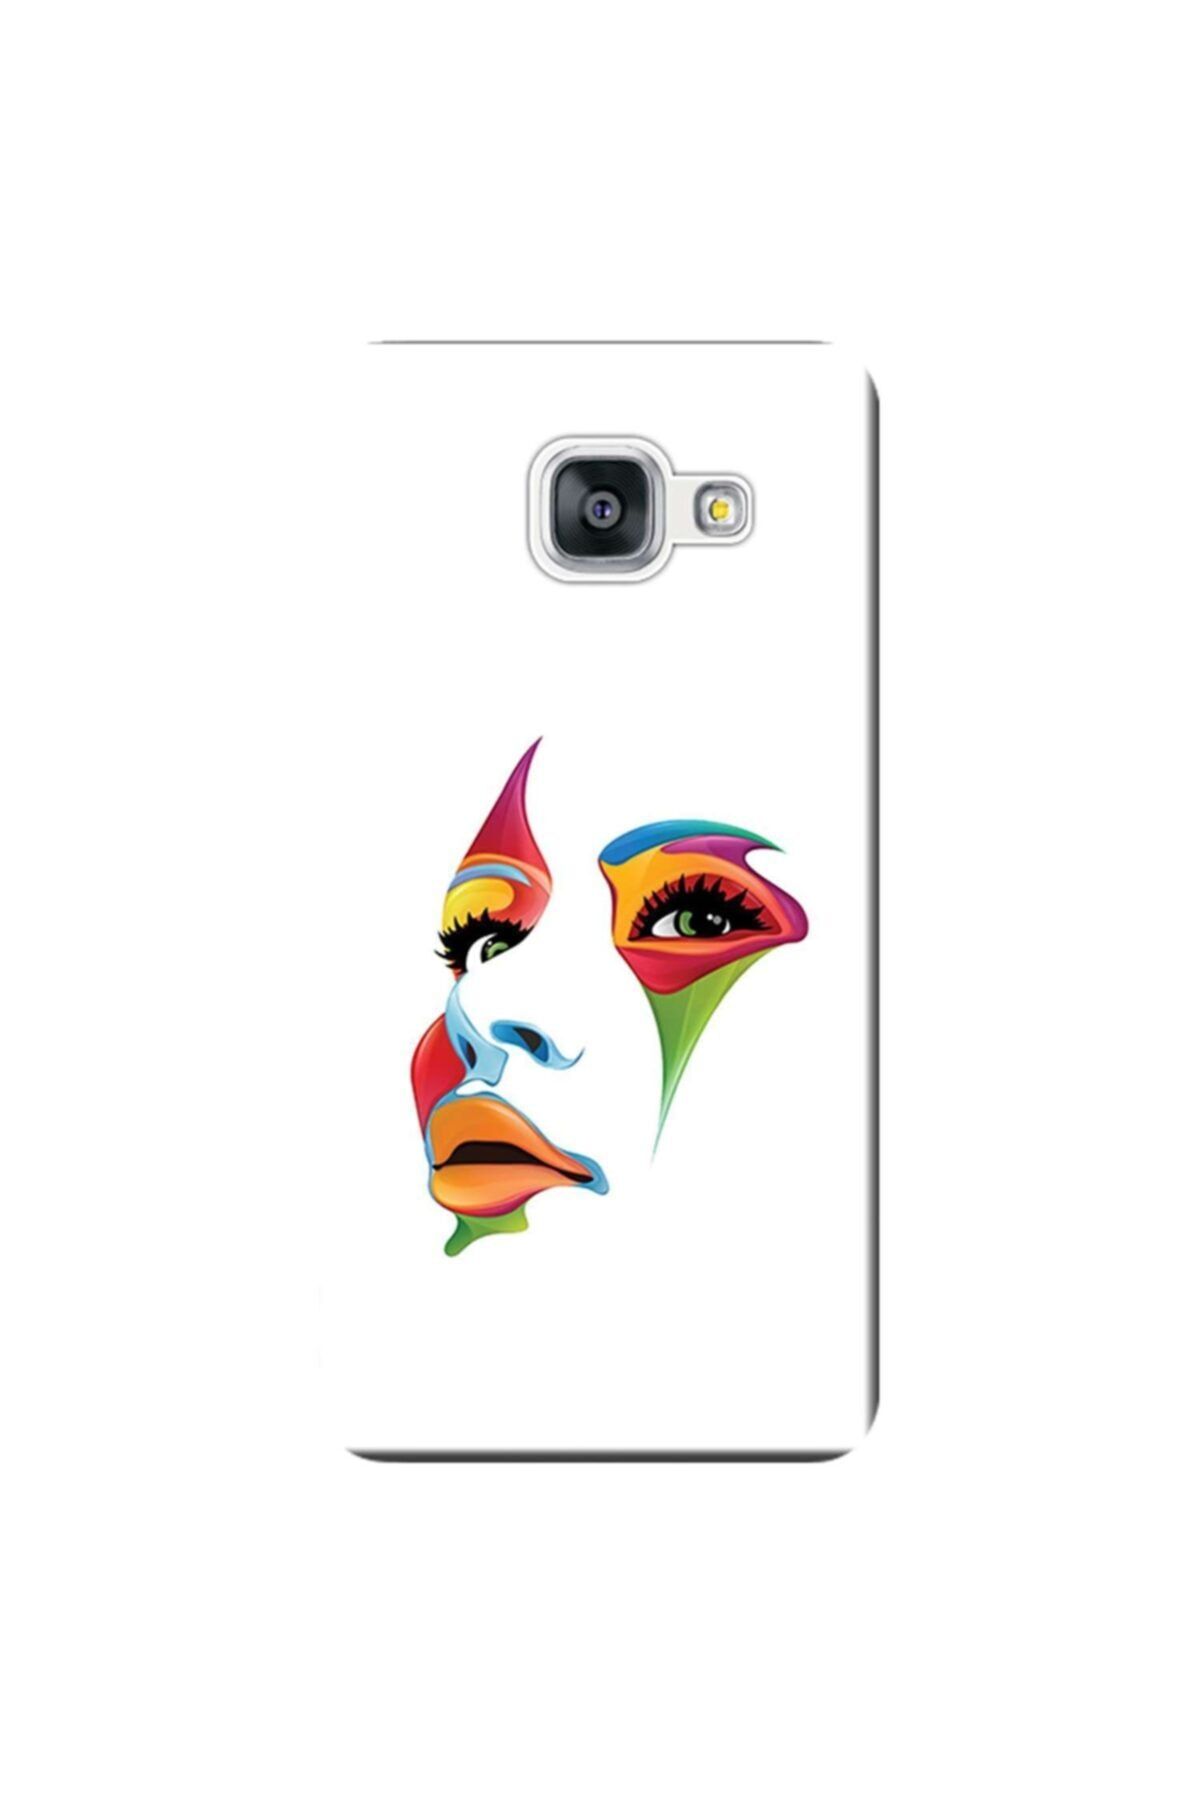 VOLENTE Samsung Galaxy J7 Prime Kılıf Sm-g610 Silikon Baskılı Face Stk:564